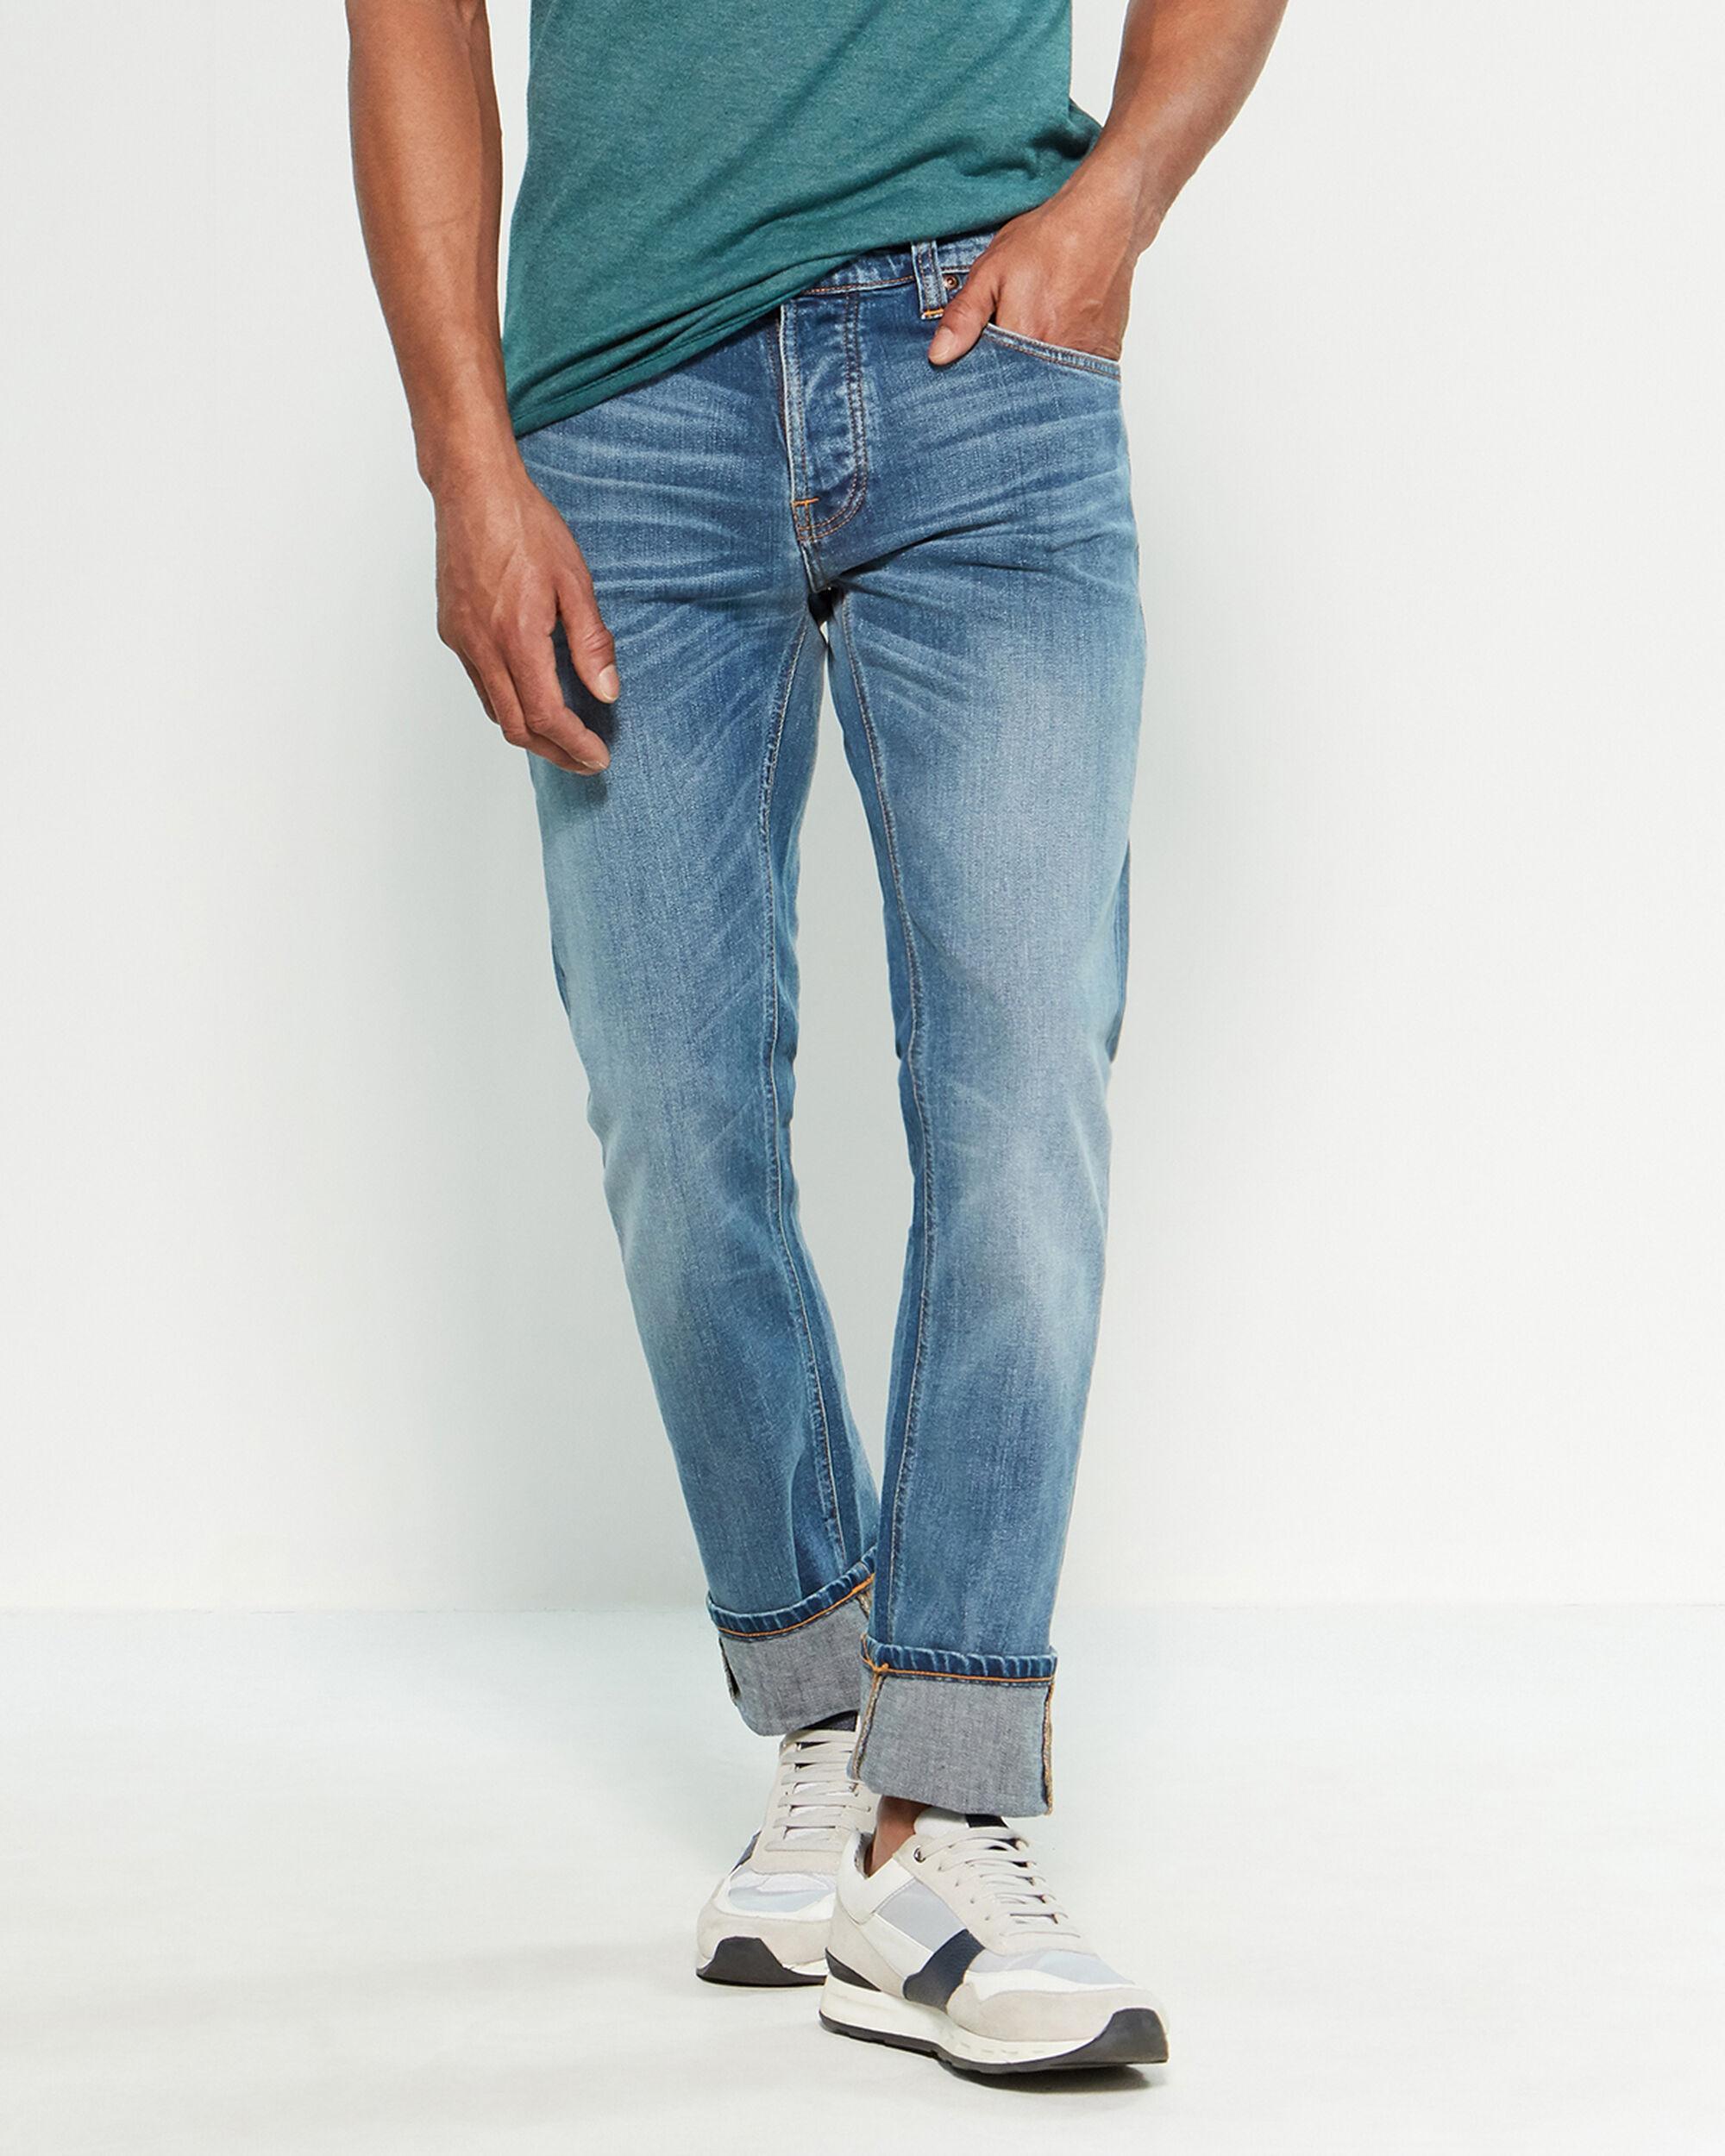 Nudie Jeans Denim True Cold Blue Tilted Tor Slim Jeans for Men - Lyst